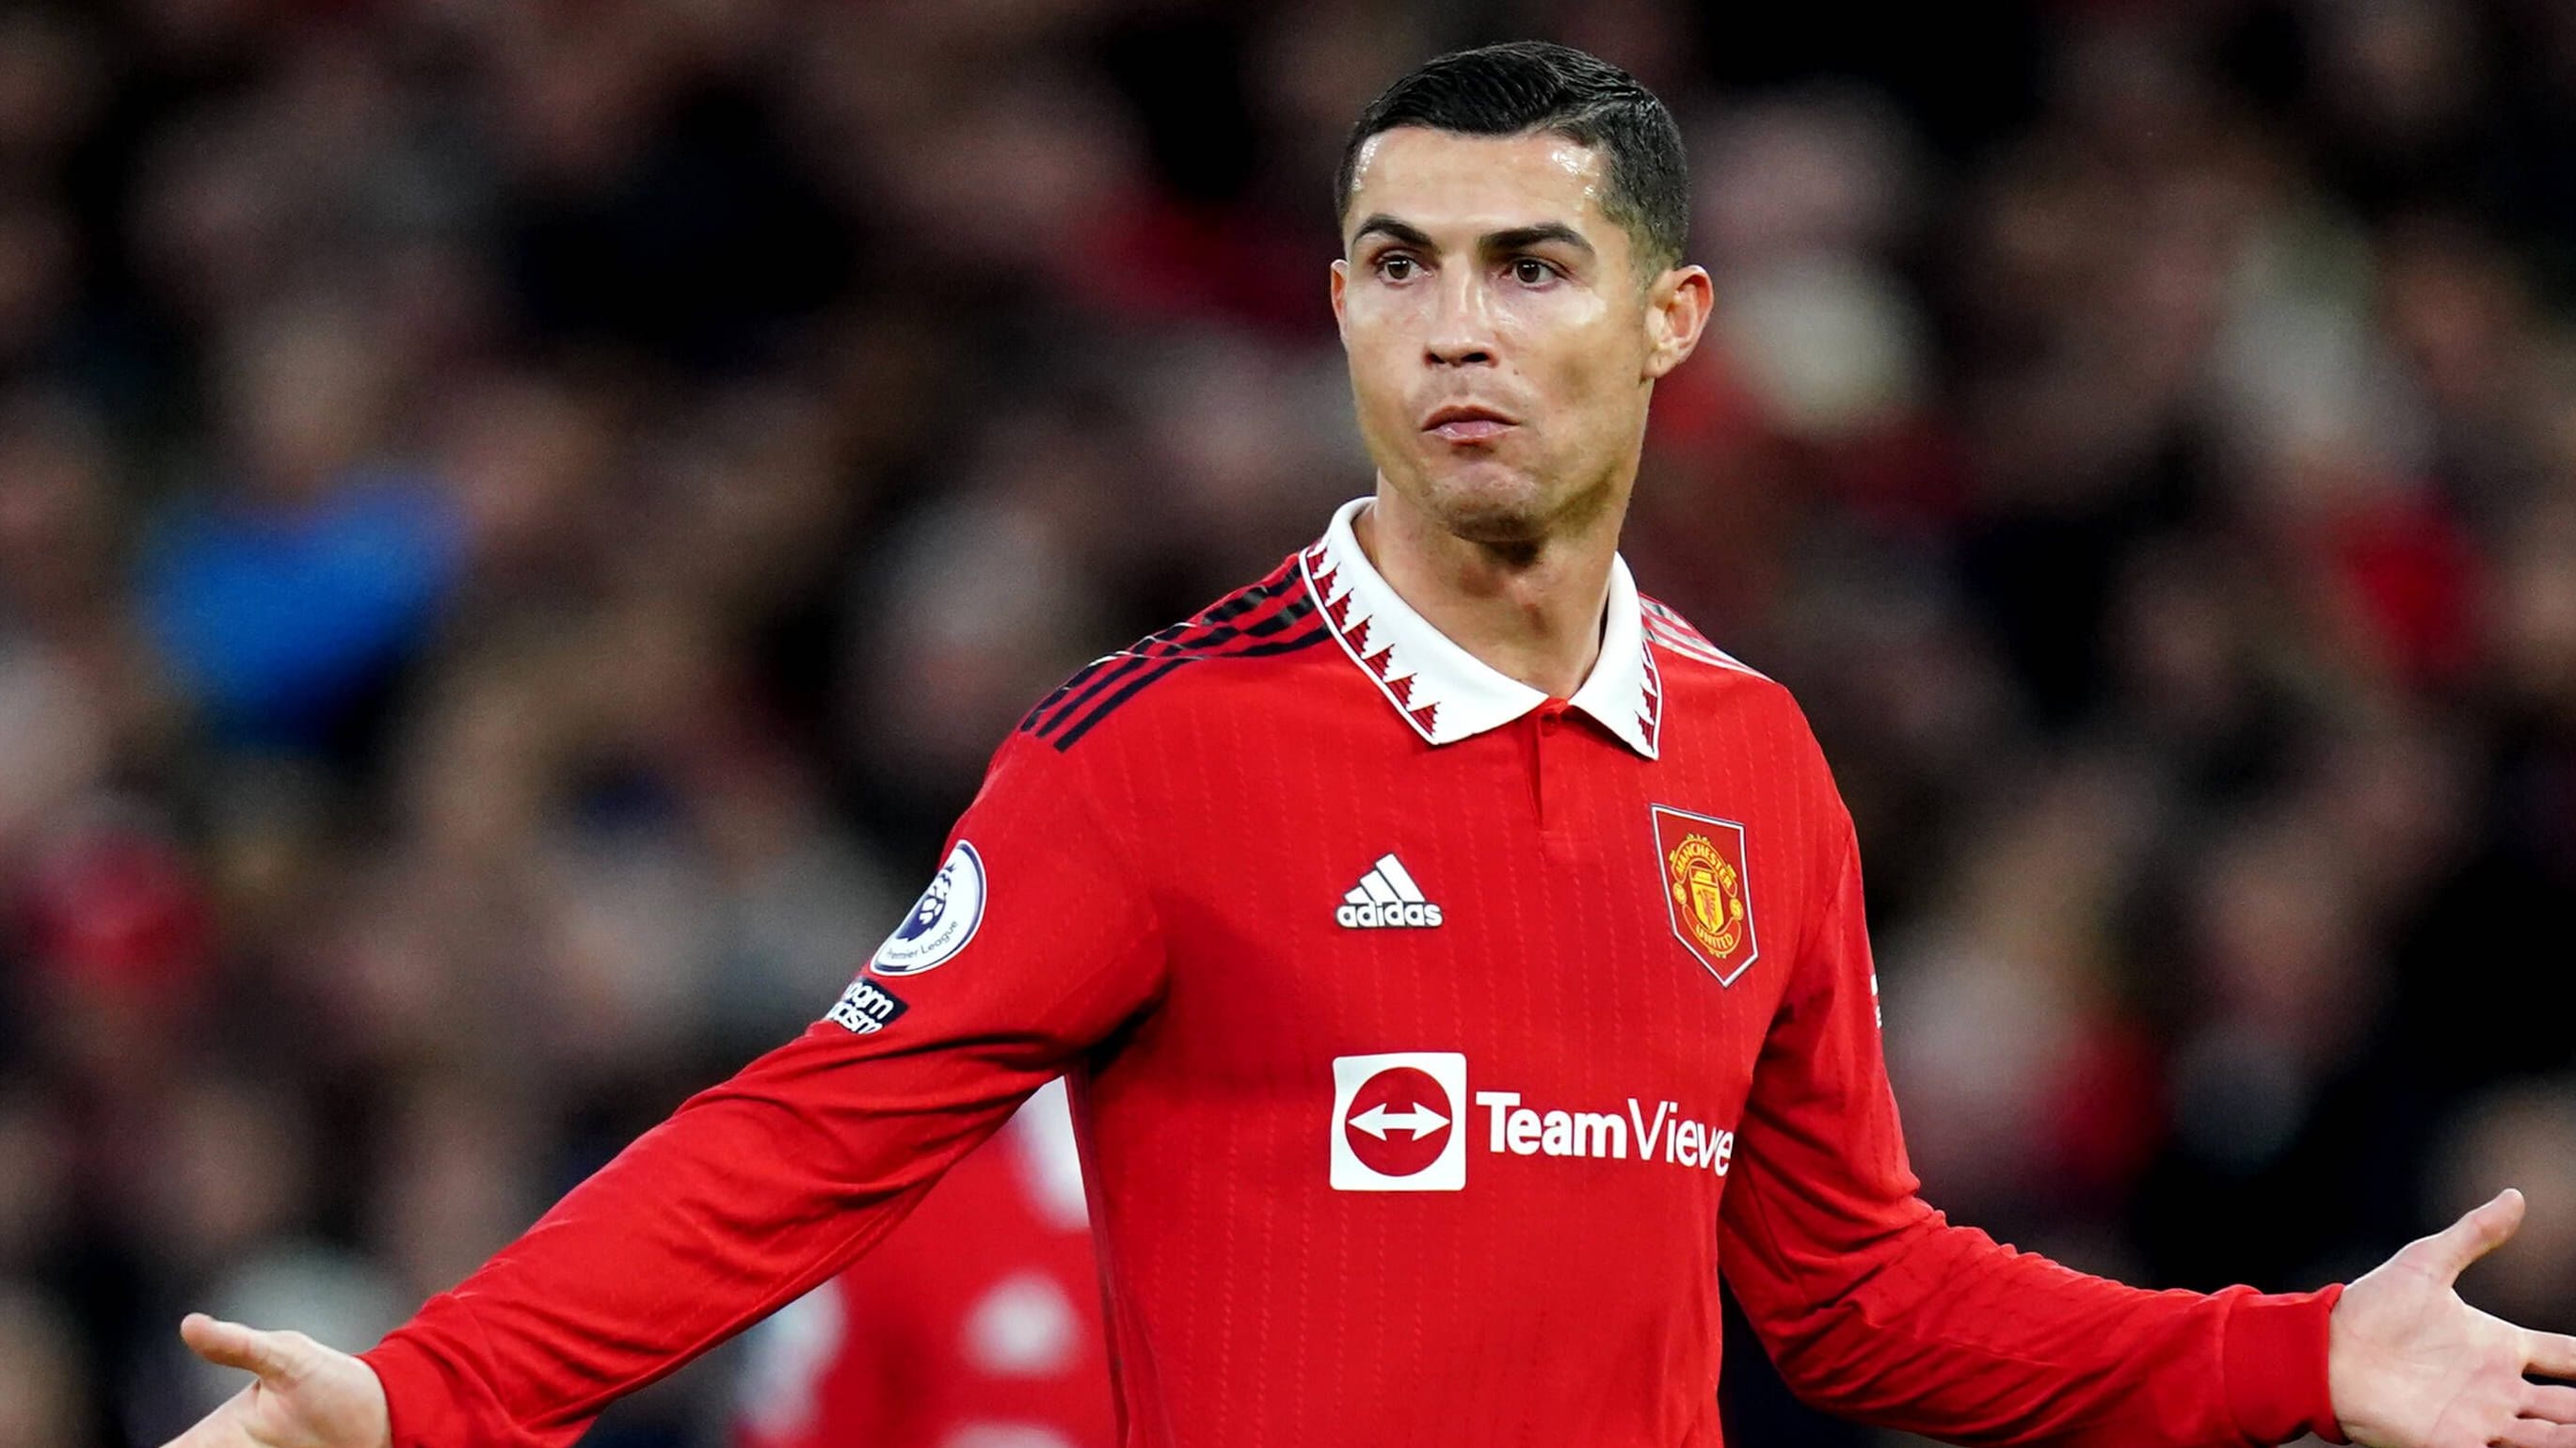 Cristiano Ronald rechnet mit Manchester United ab – so reagiert der Klub auf die Kritik